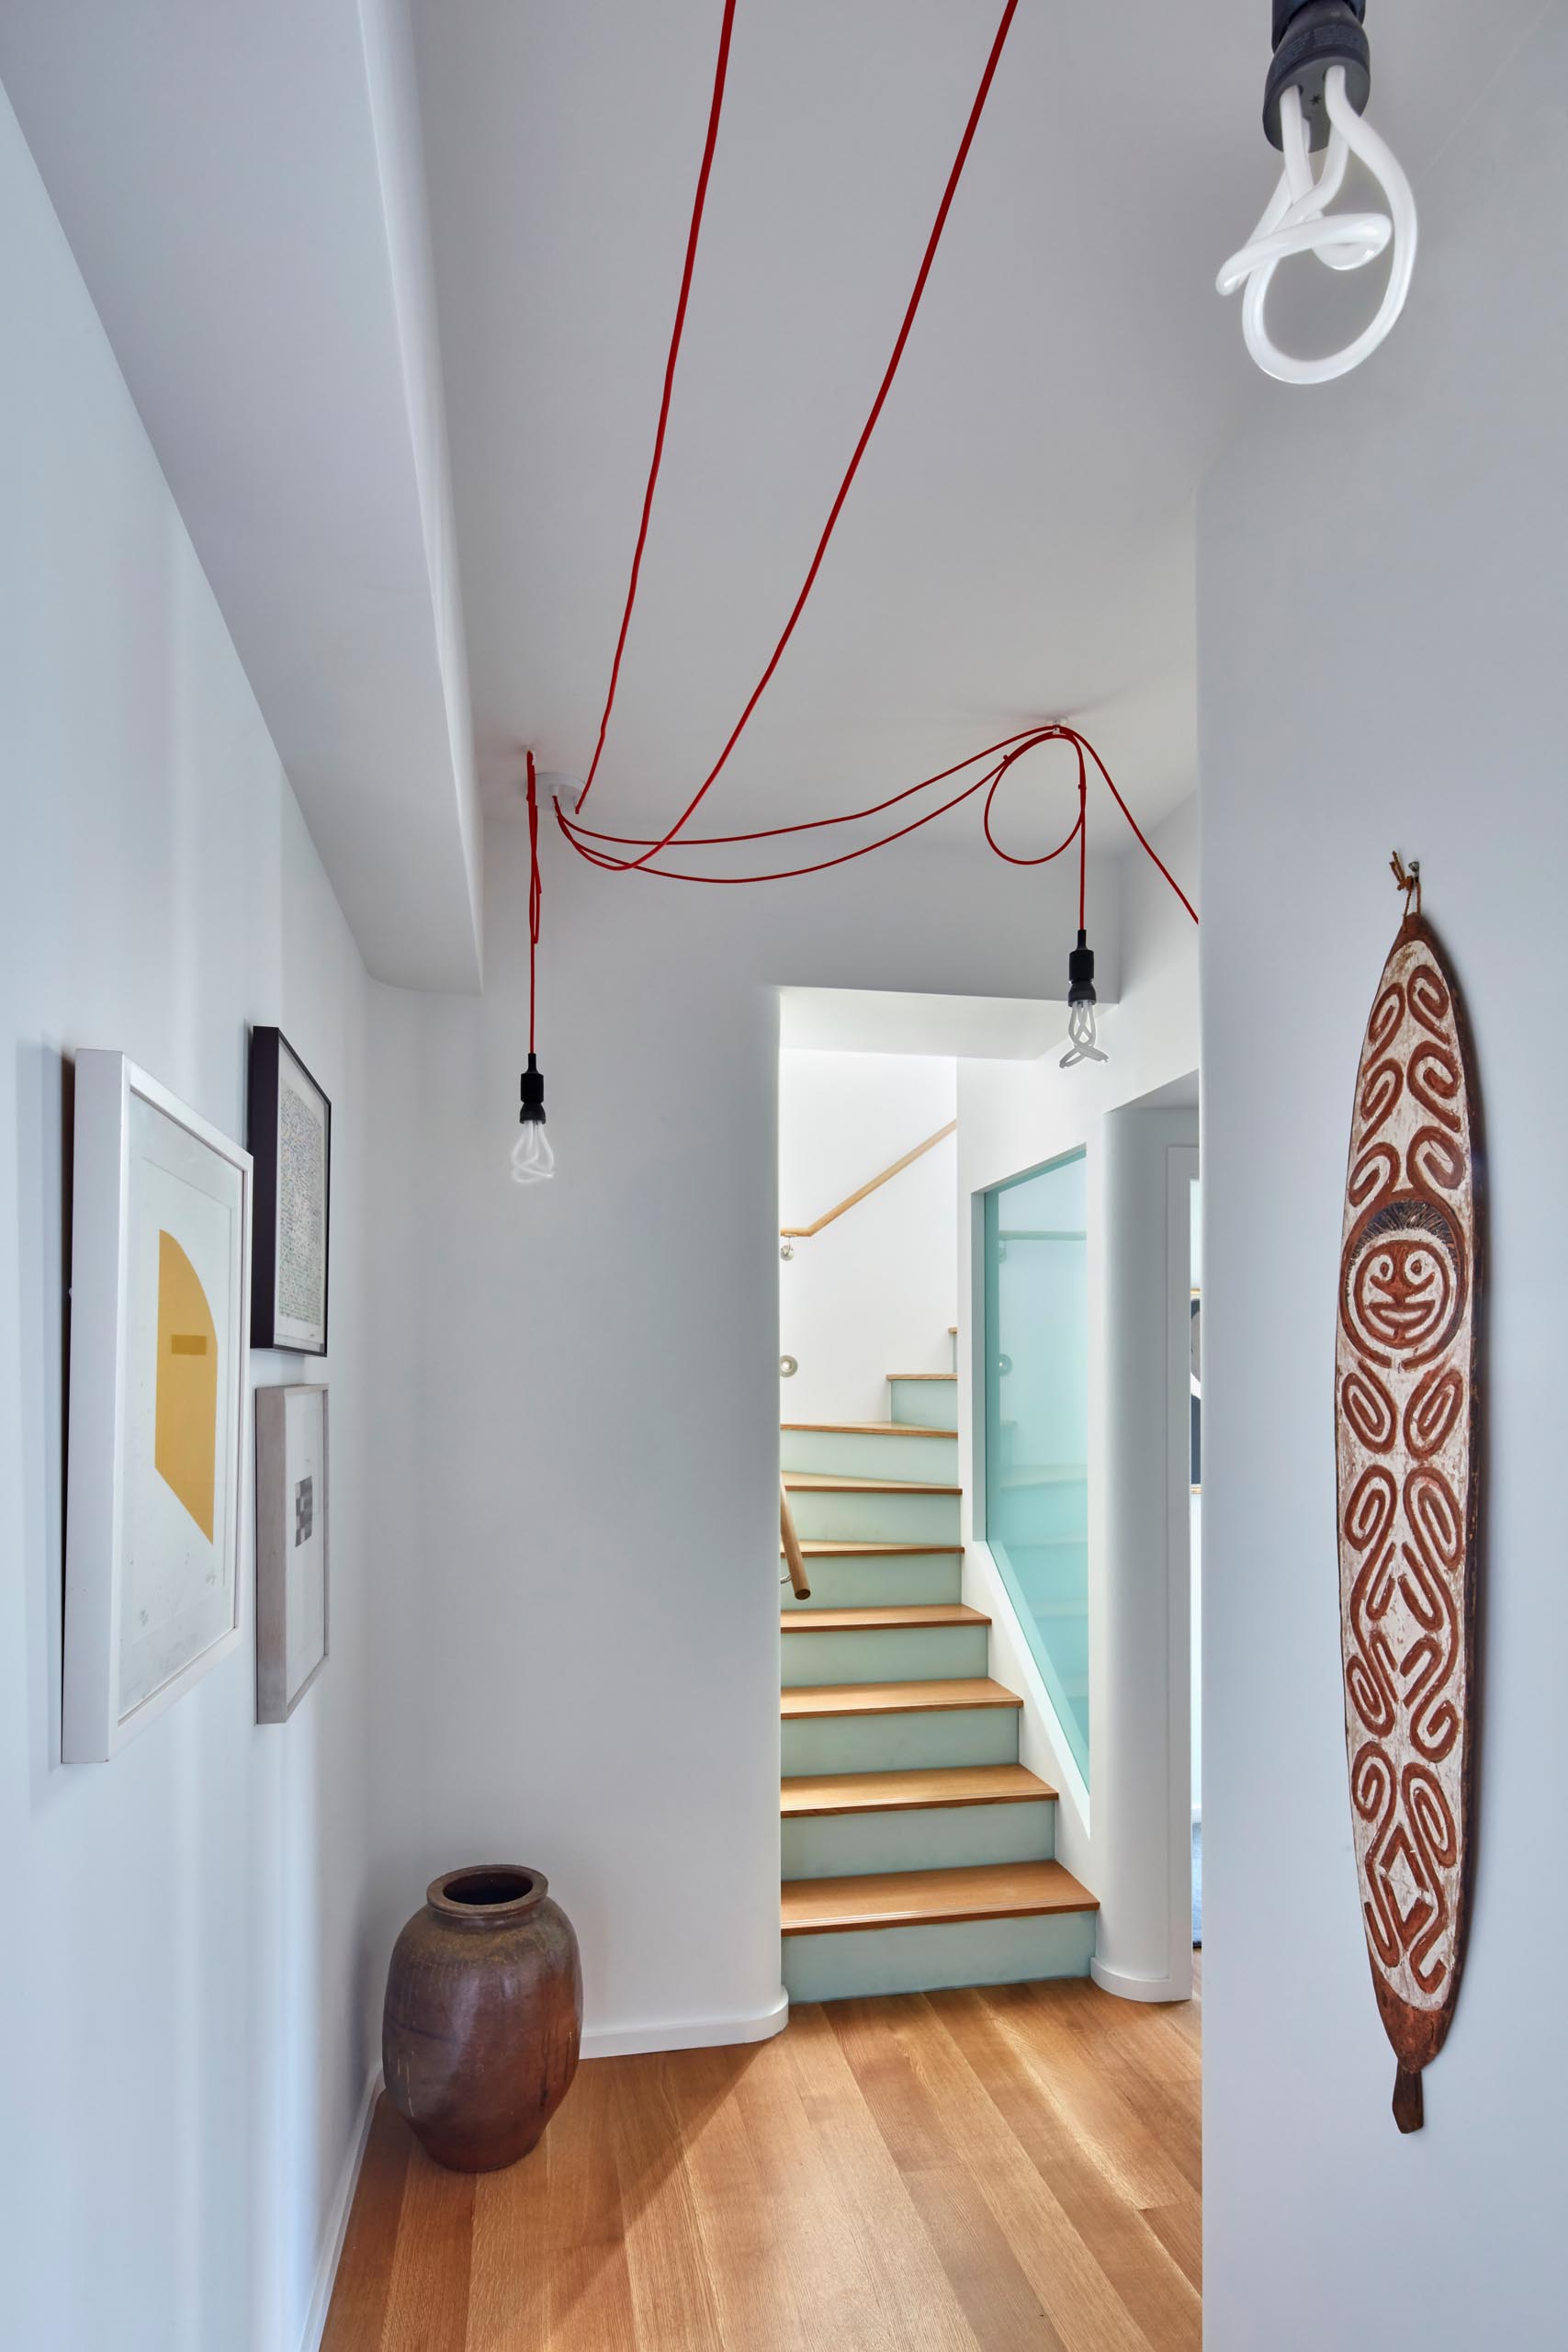 Лестница с деревянными ступенями ведет в коридор с произведениями искусства.